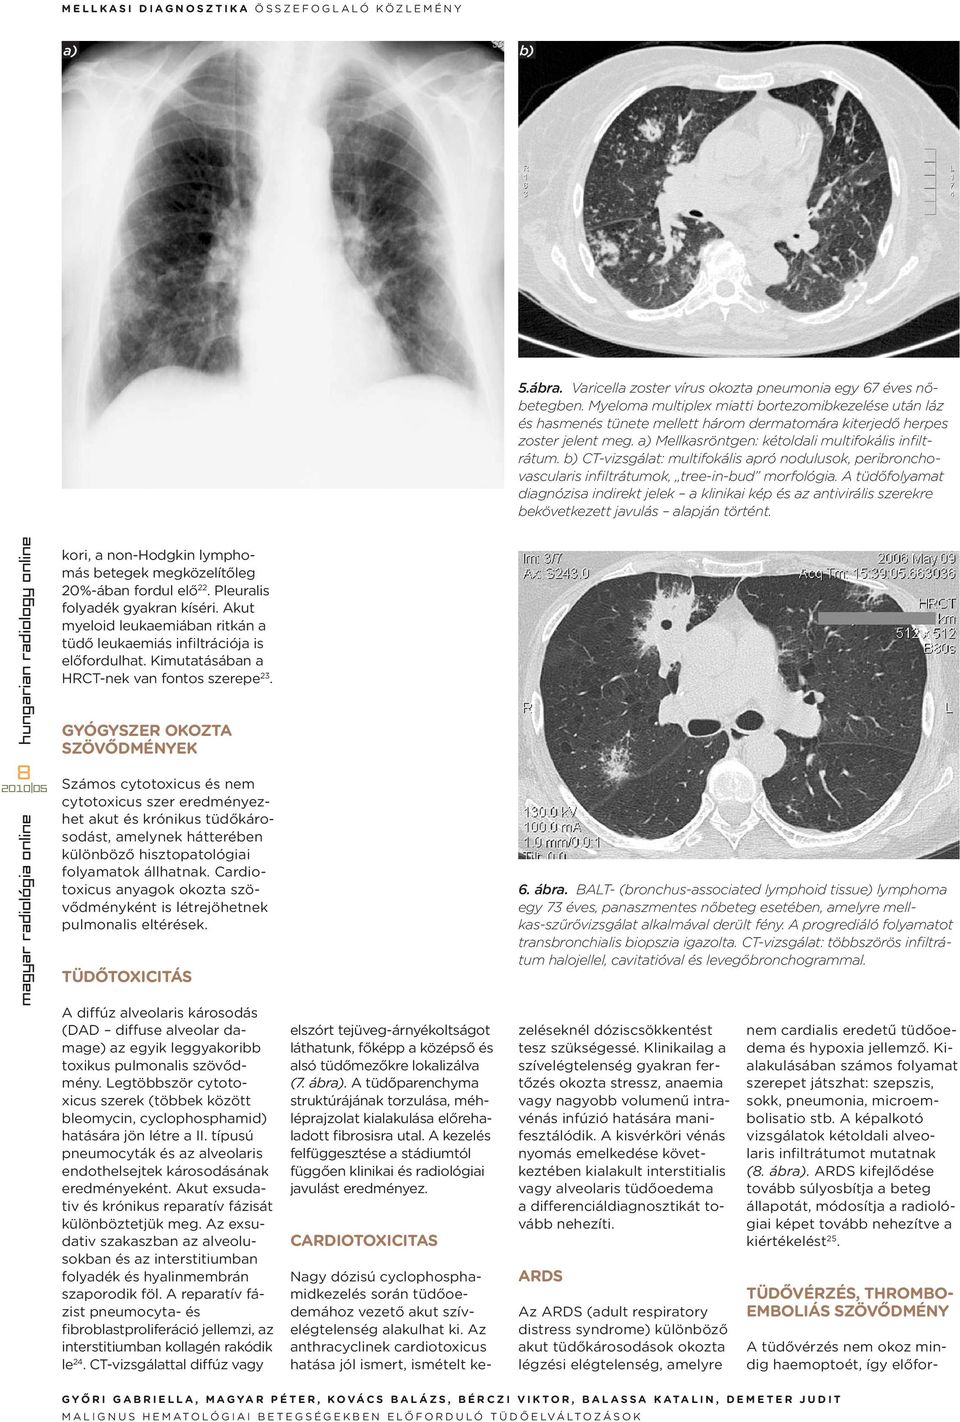 b) CT-vizsgálat: multifokális apró nodulusok, peribronchovascularis infiltrátumok, tree-in-bud morfológia.